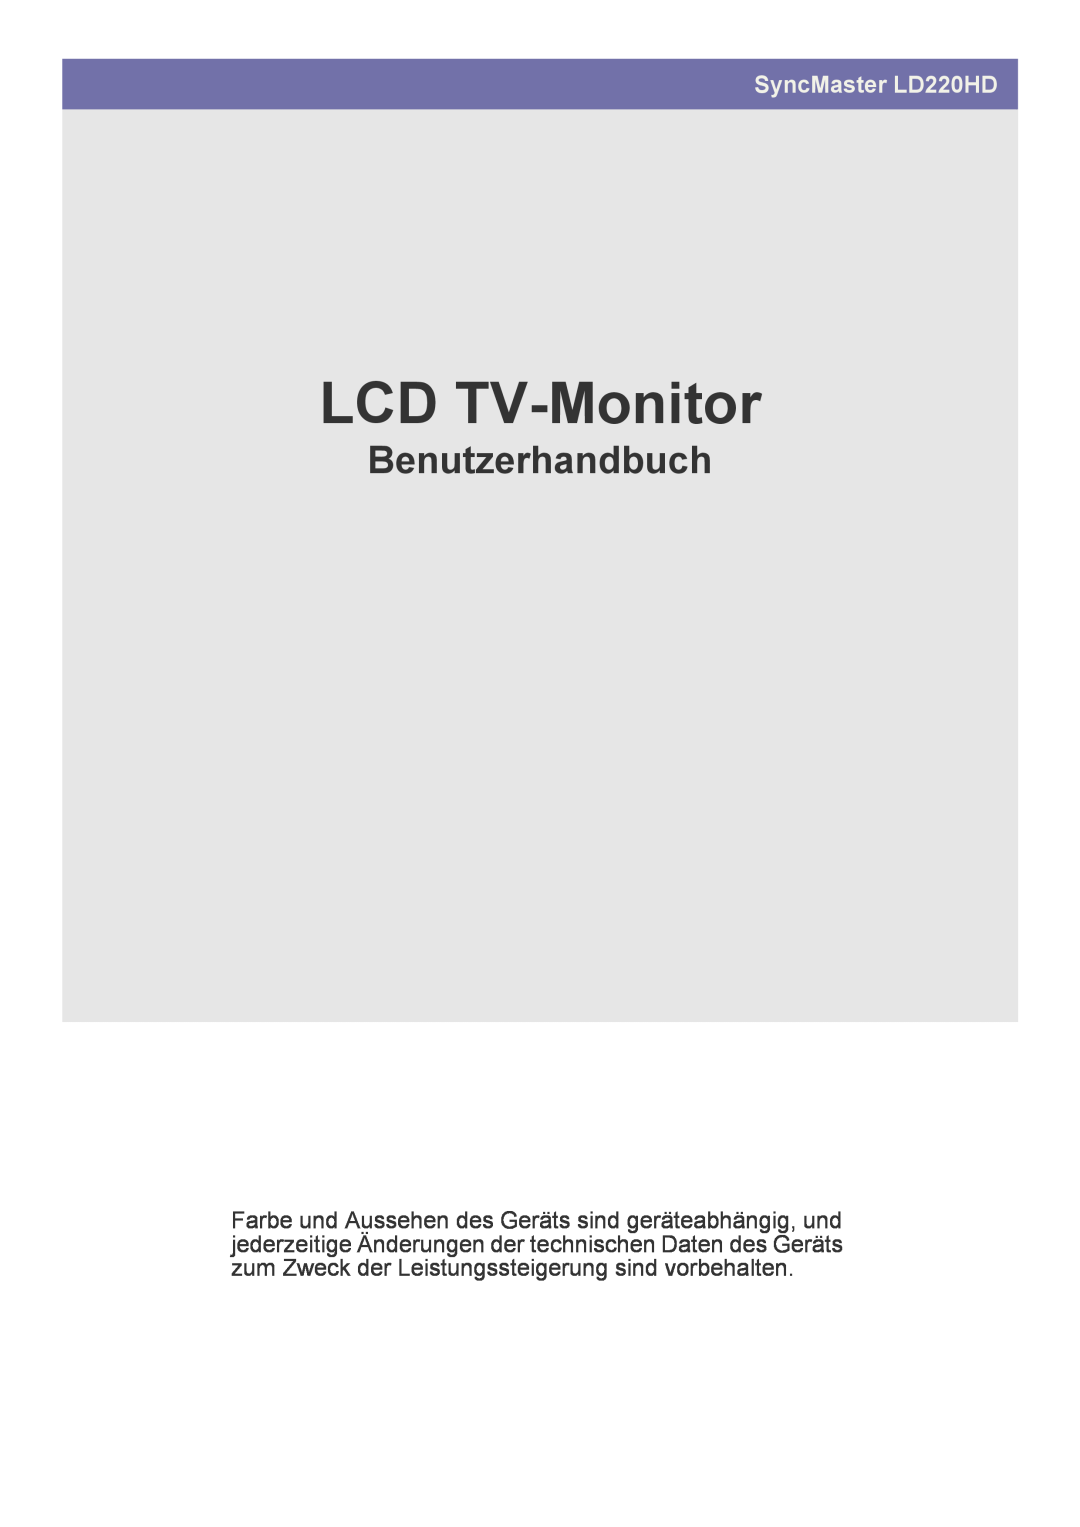 Samsung LS22FMDGF/EN manual Monitor LCD TV, Uživatelská příručka, SyncMaster LD220HD 